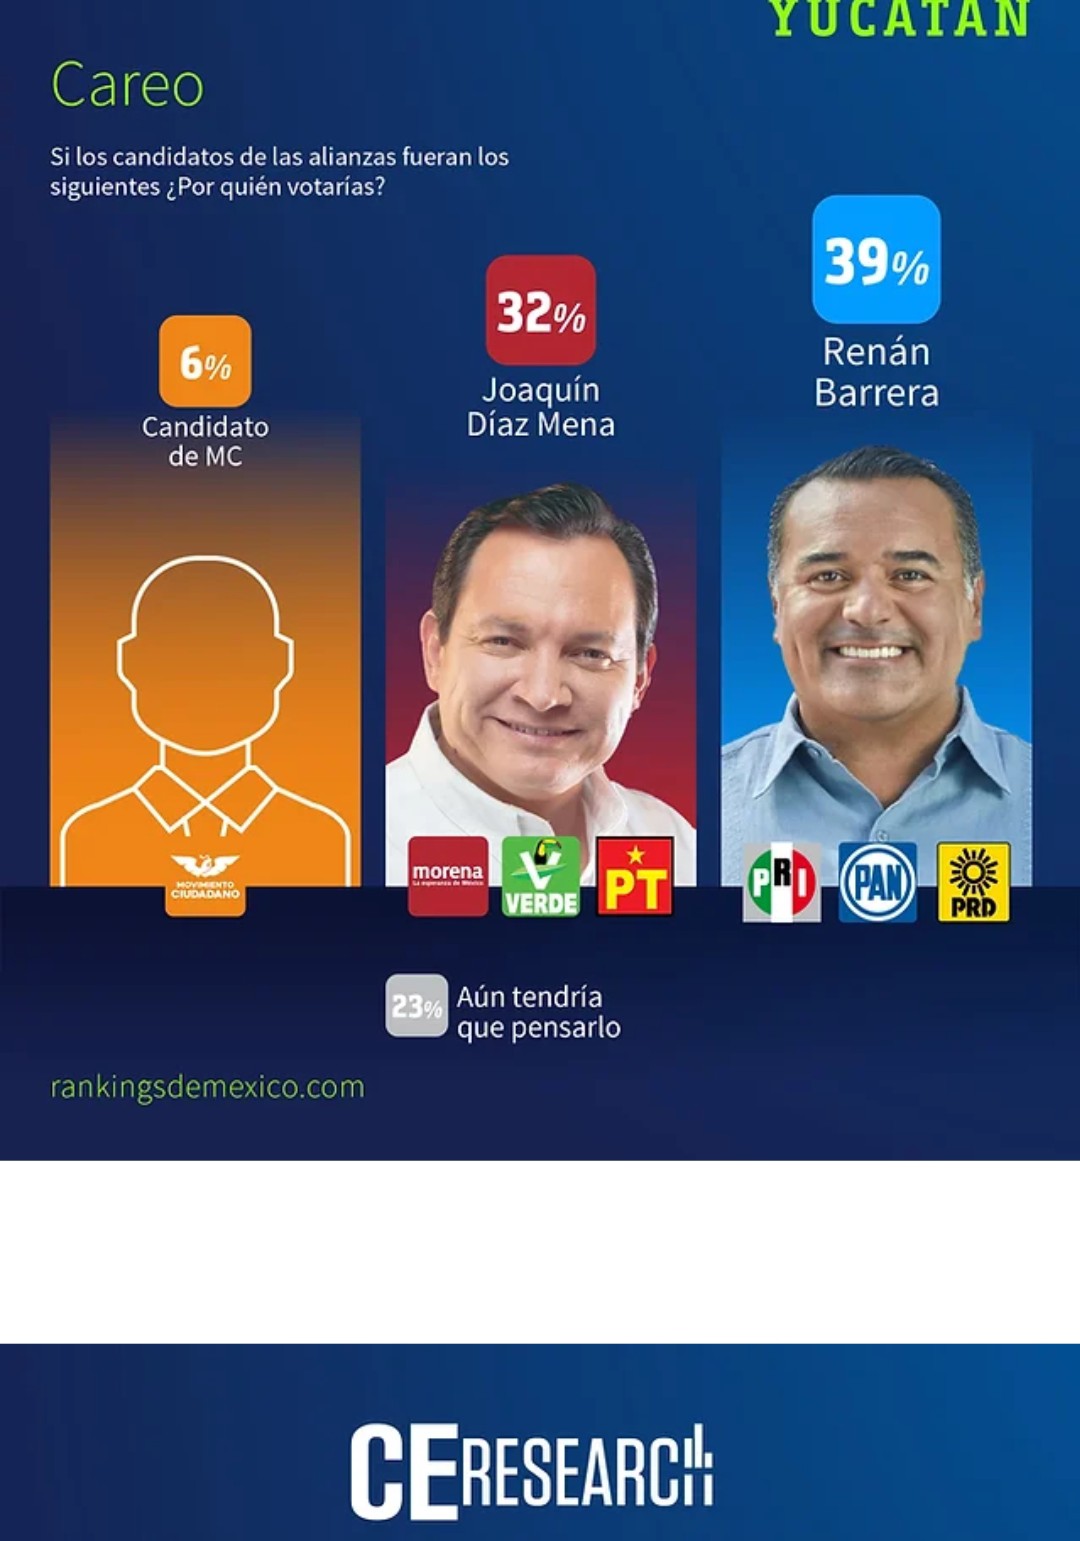 Puntea Renan Barrera en encuestas